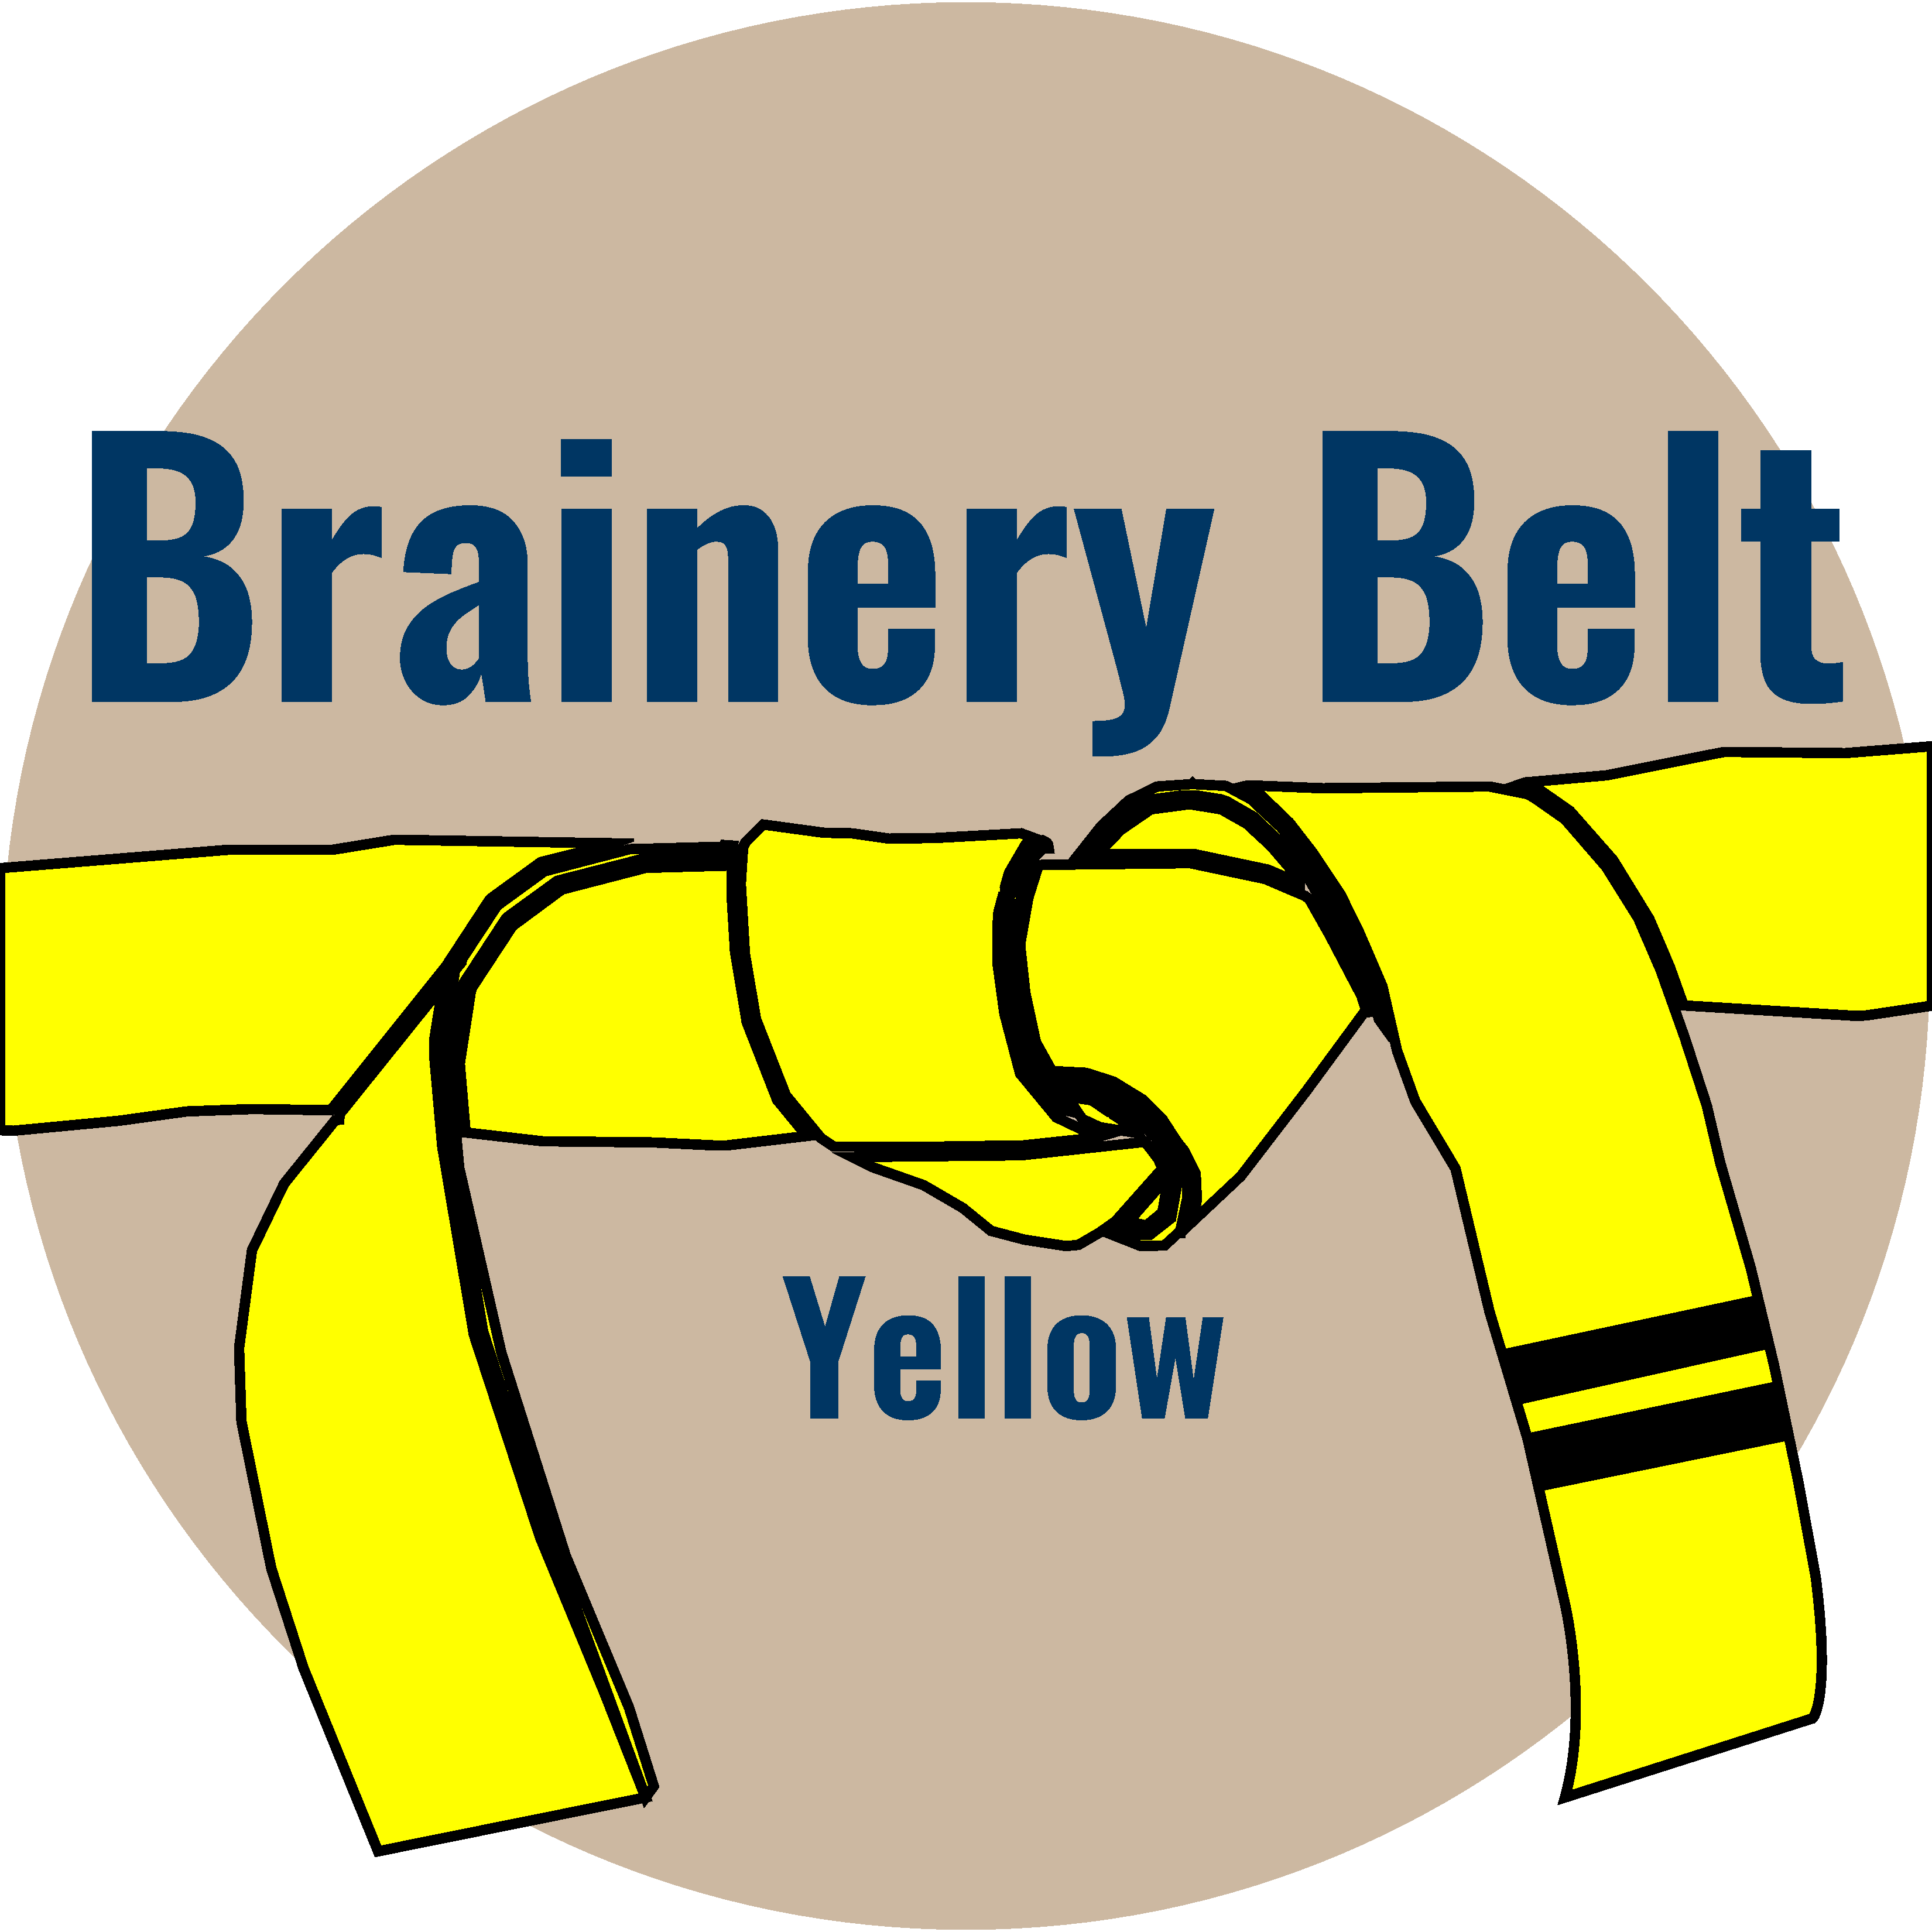 UC2 Brainery Yellow Belt II